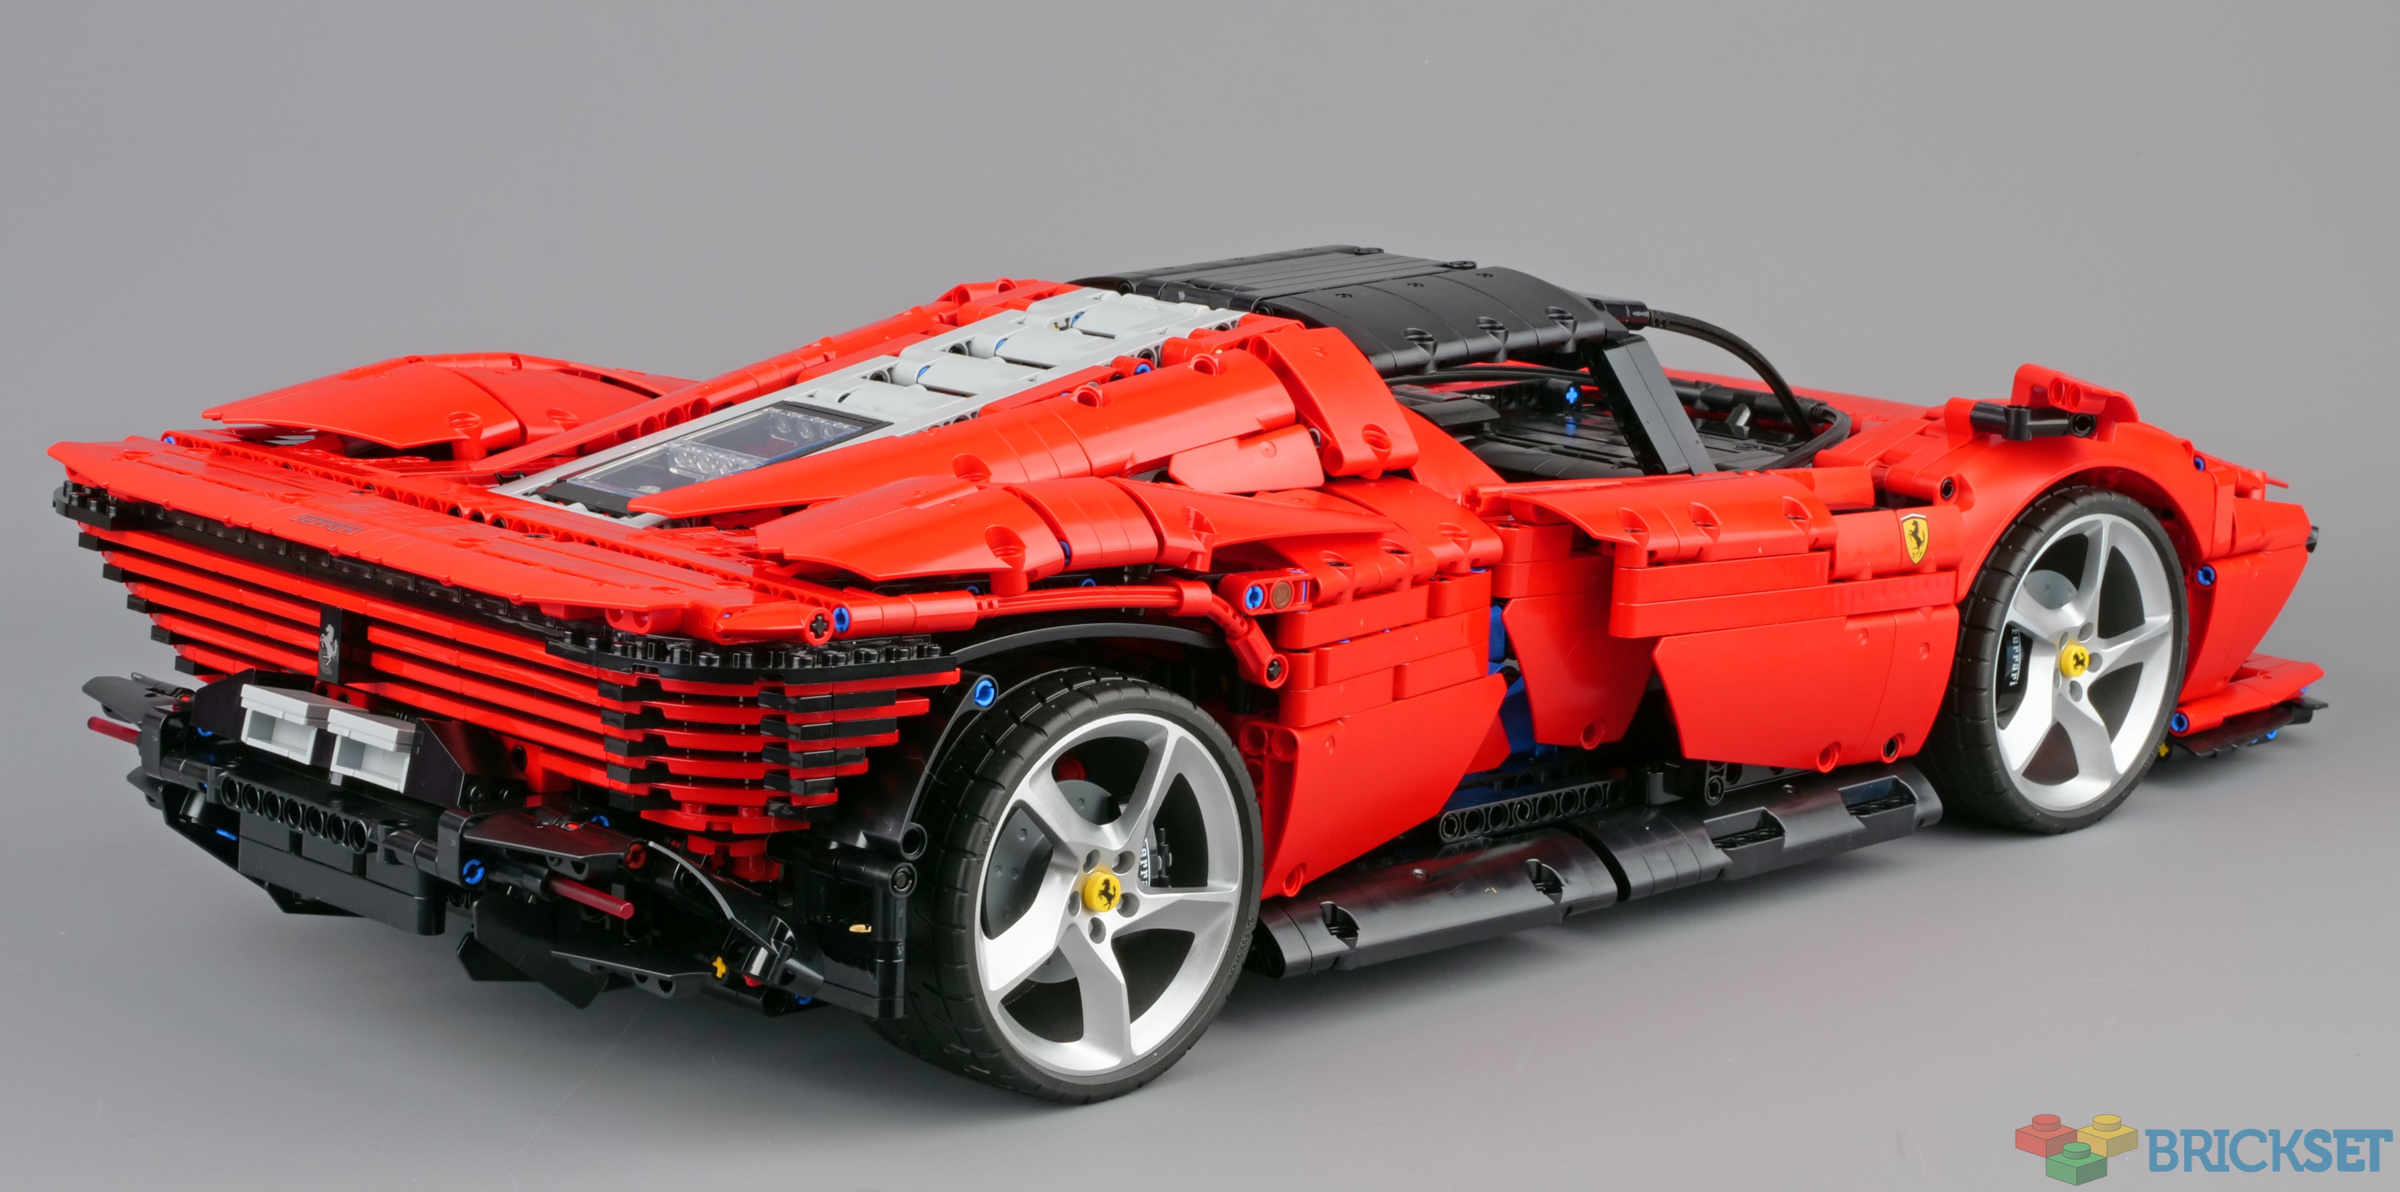 LEGO Ferrari Daytona SP3 review